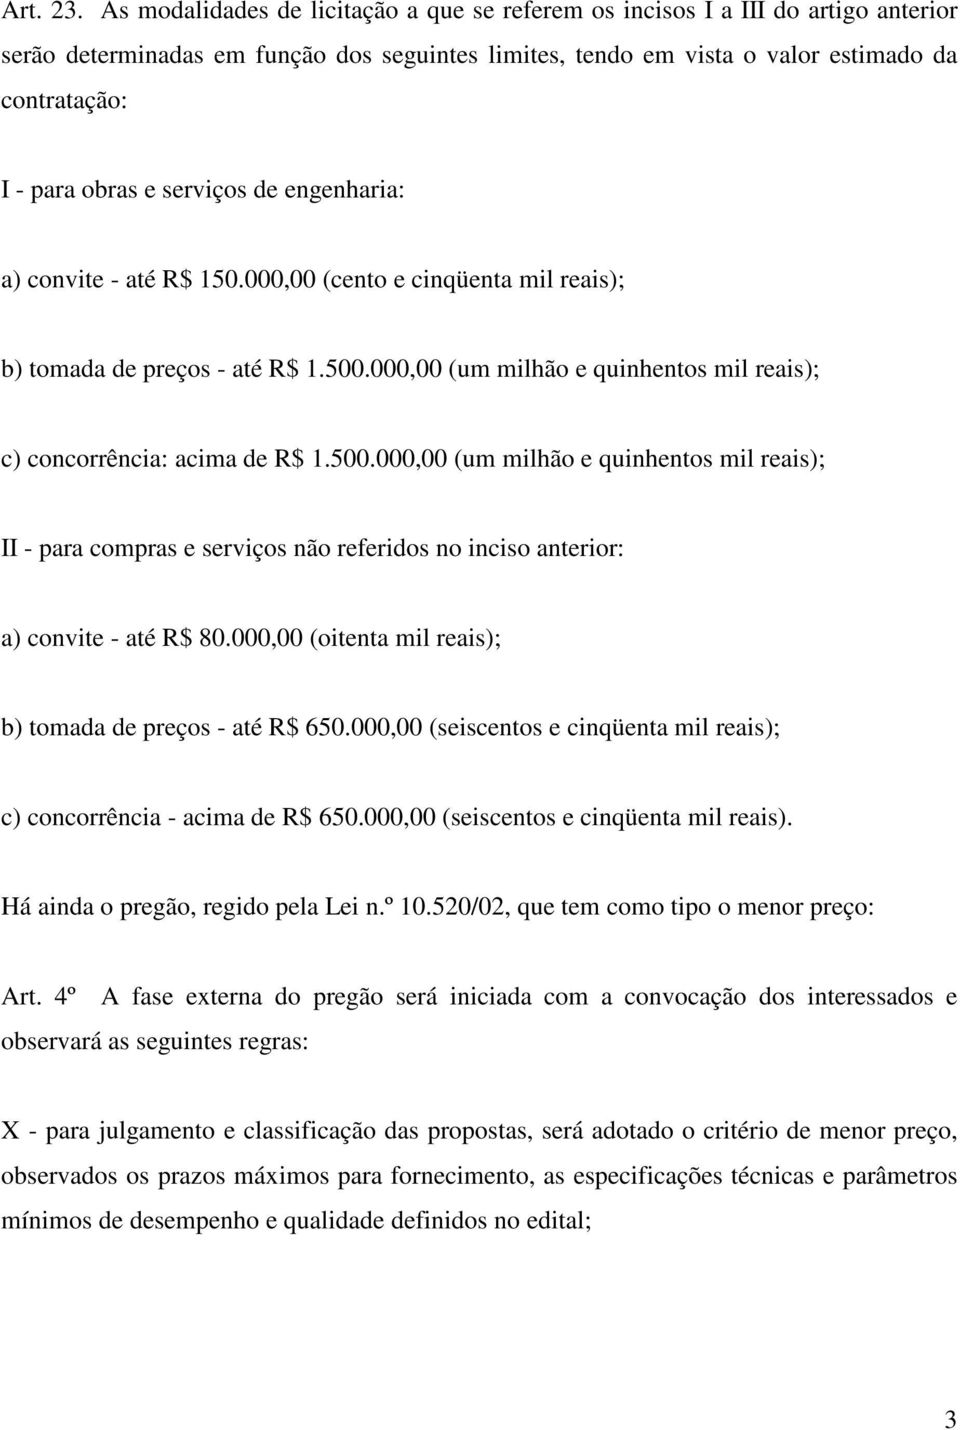 serviços de engenharia: a) convite - até R$ 150.000,00 (cento e cinqüenta mil reais); b) tomada de preços - até R$ 1.500.